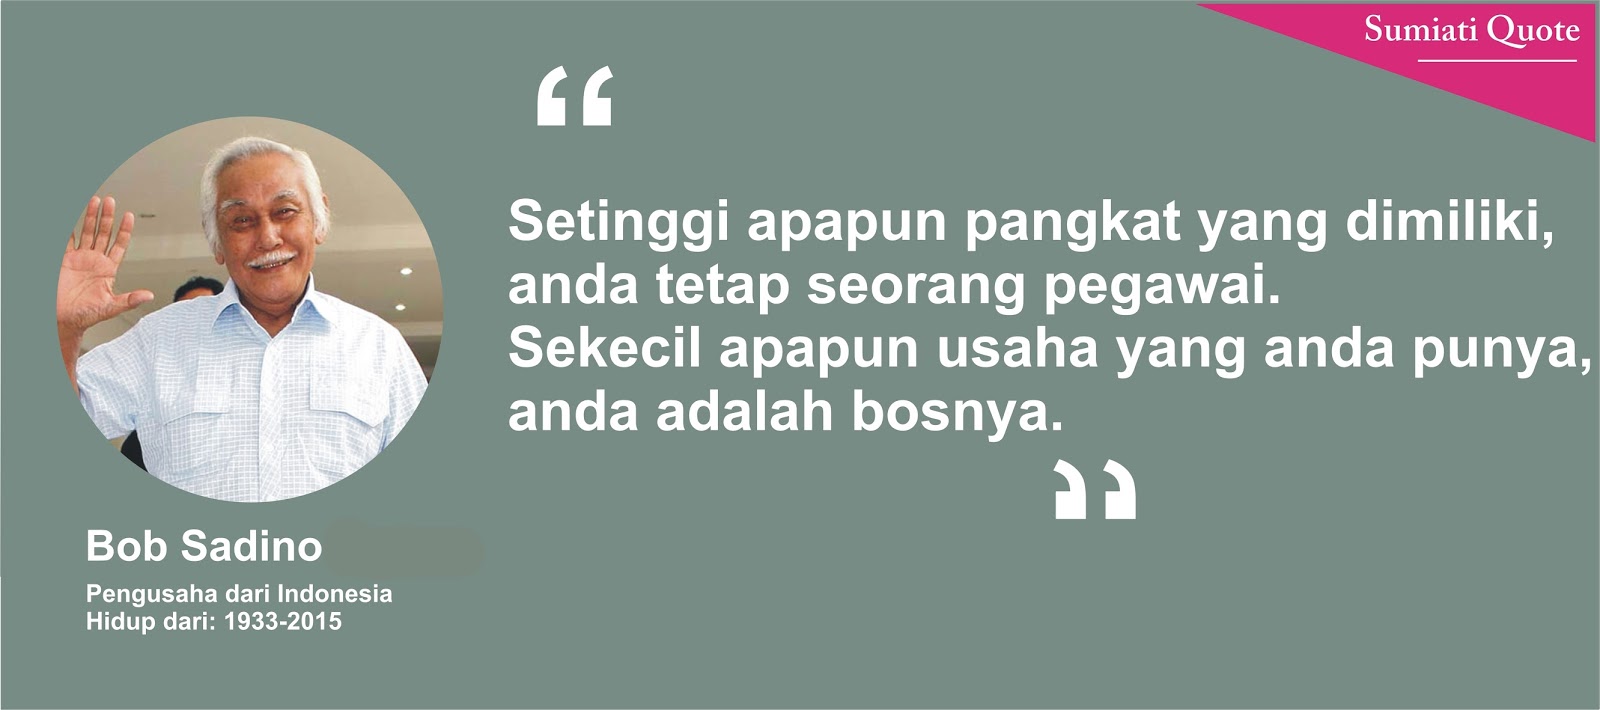 Top Entrepreneur Quote 2017 Dari Bob Sadino Pengusaha Indonesia